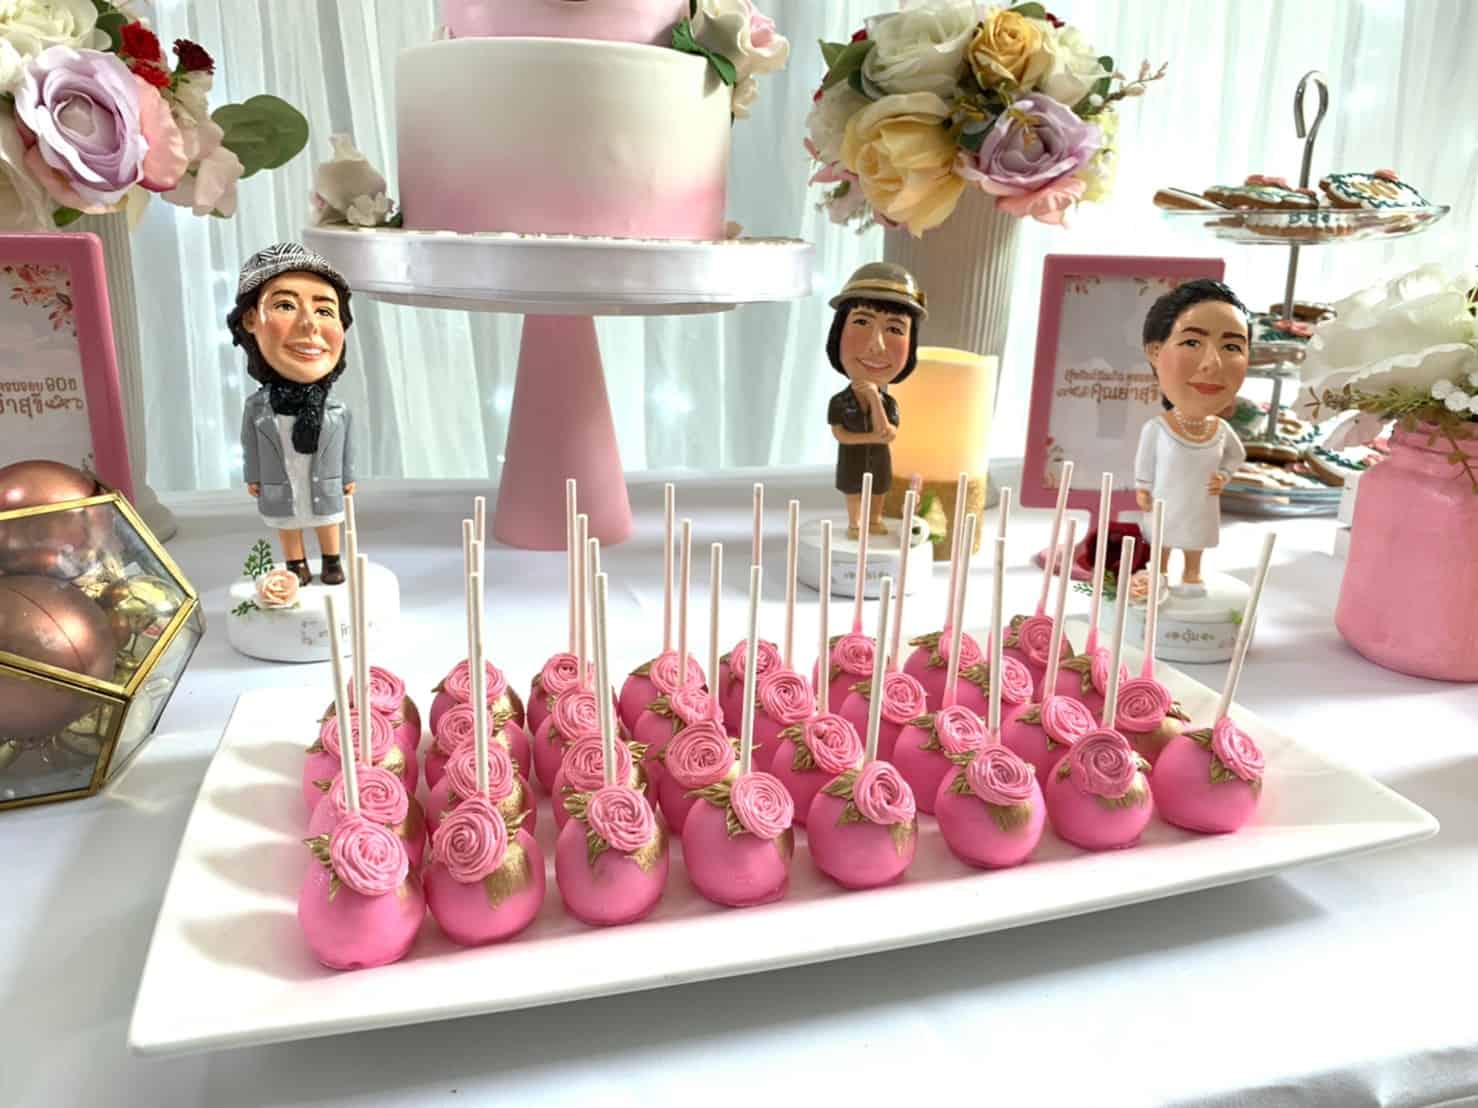 ไอเดียปาร์ตี้วันเกิดในโทนสีชมพู น่ารักสุดๆ ทั้งแบคดรอป ลูกโป่ง โต๊ะเค้ก เค้กวันเกิด และขนมตามธีมงาน 